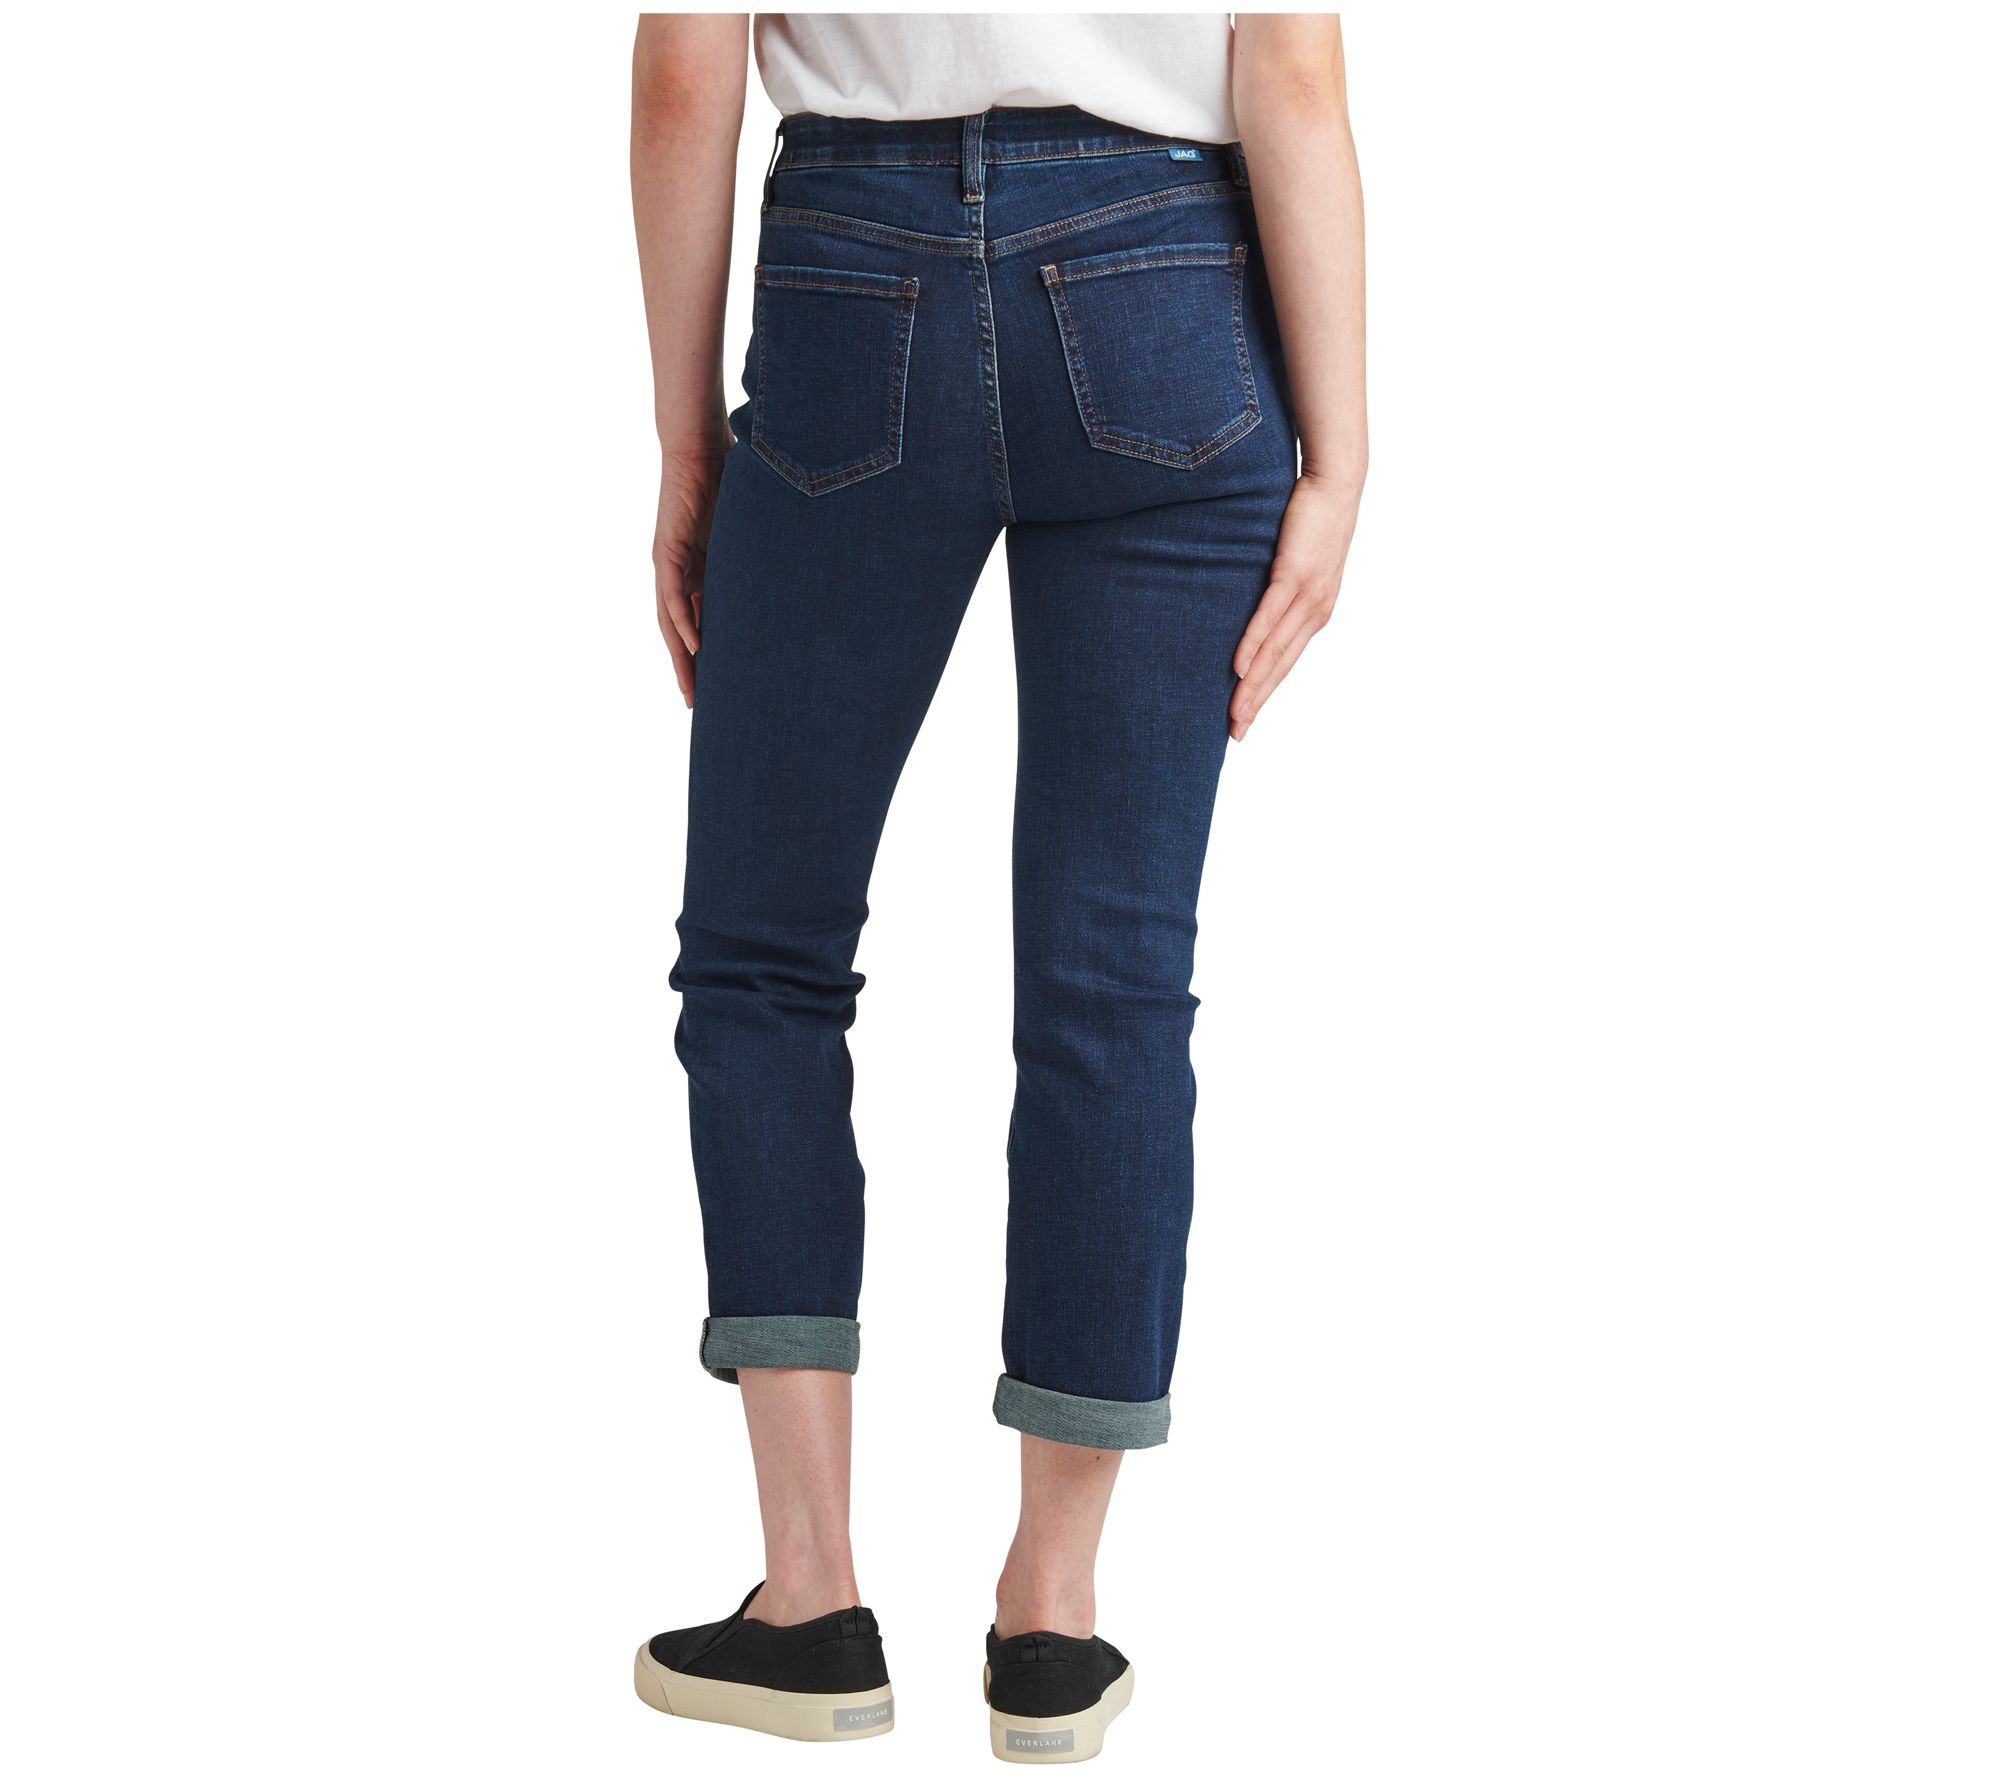 JAG Jeans Carter Mid Rise Girlfriend Jeans - Lenox - QVC.com